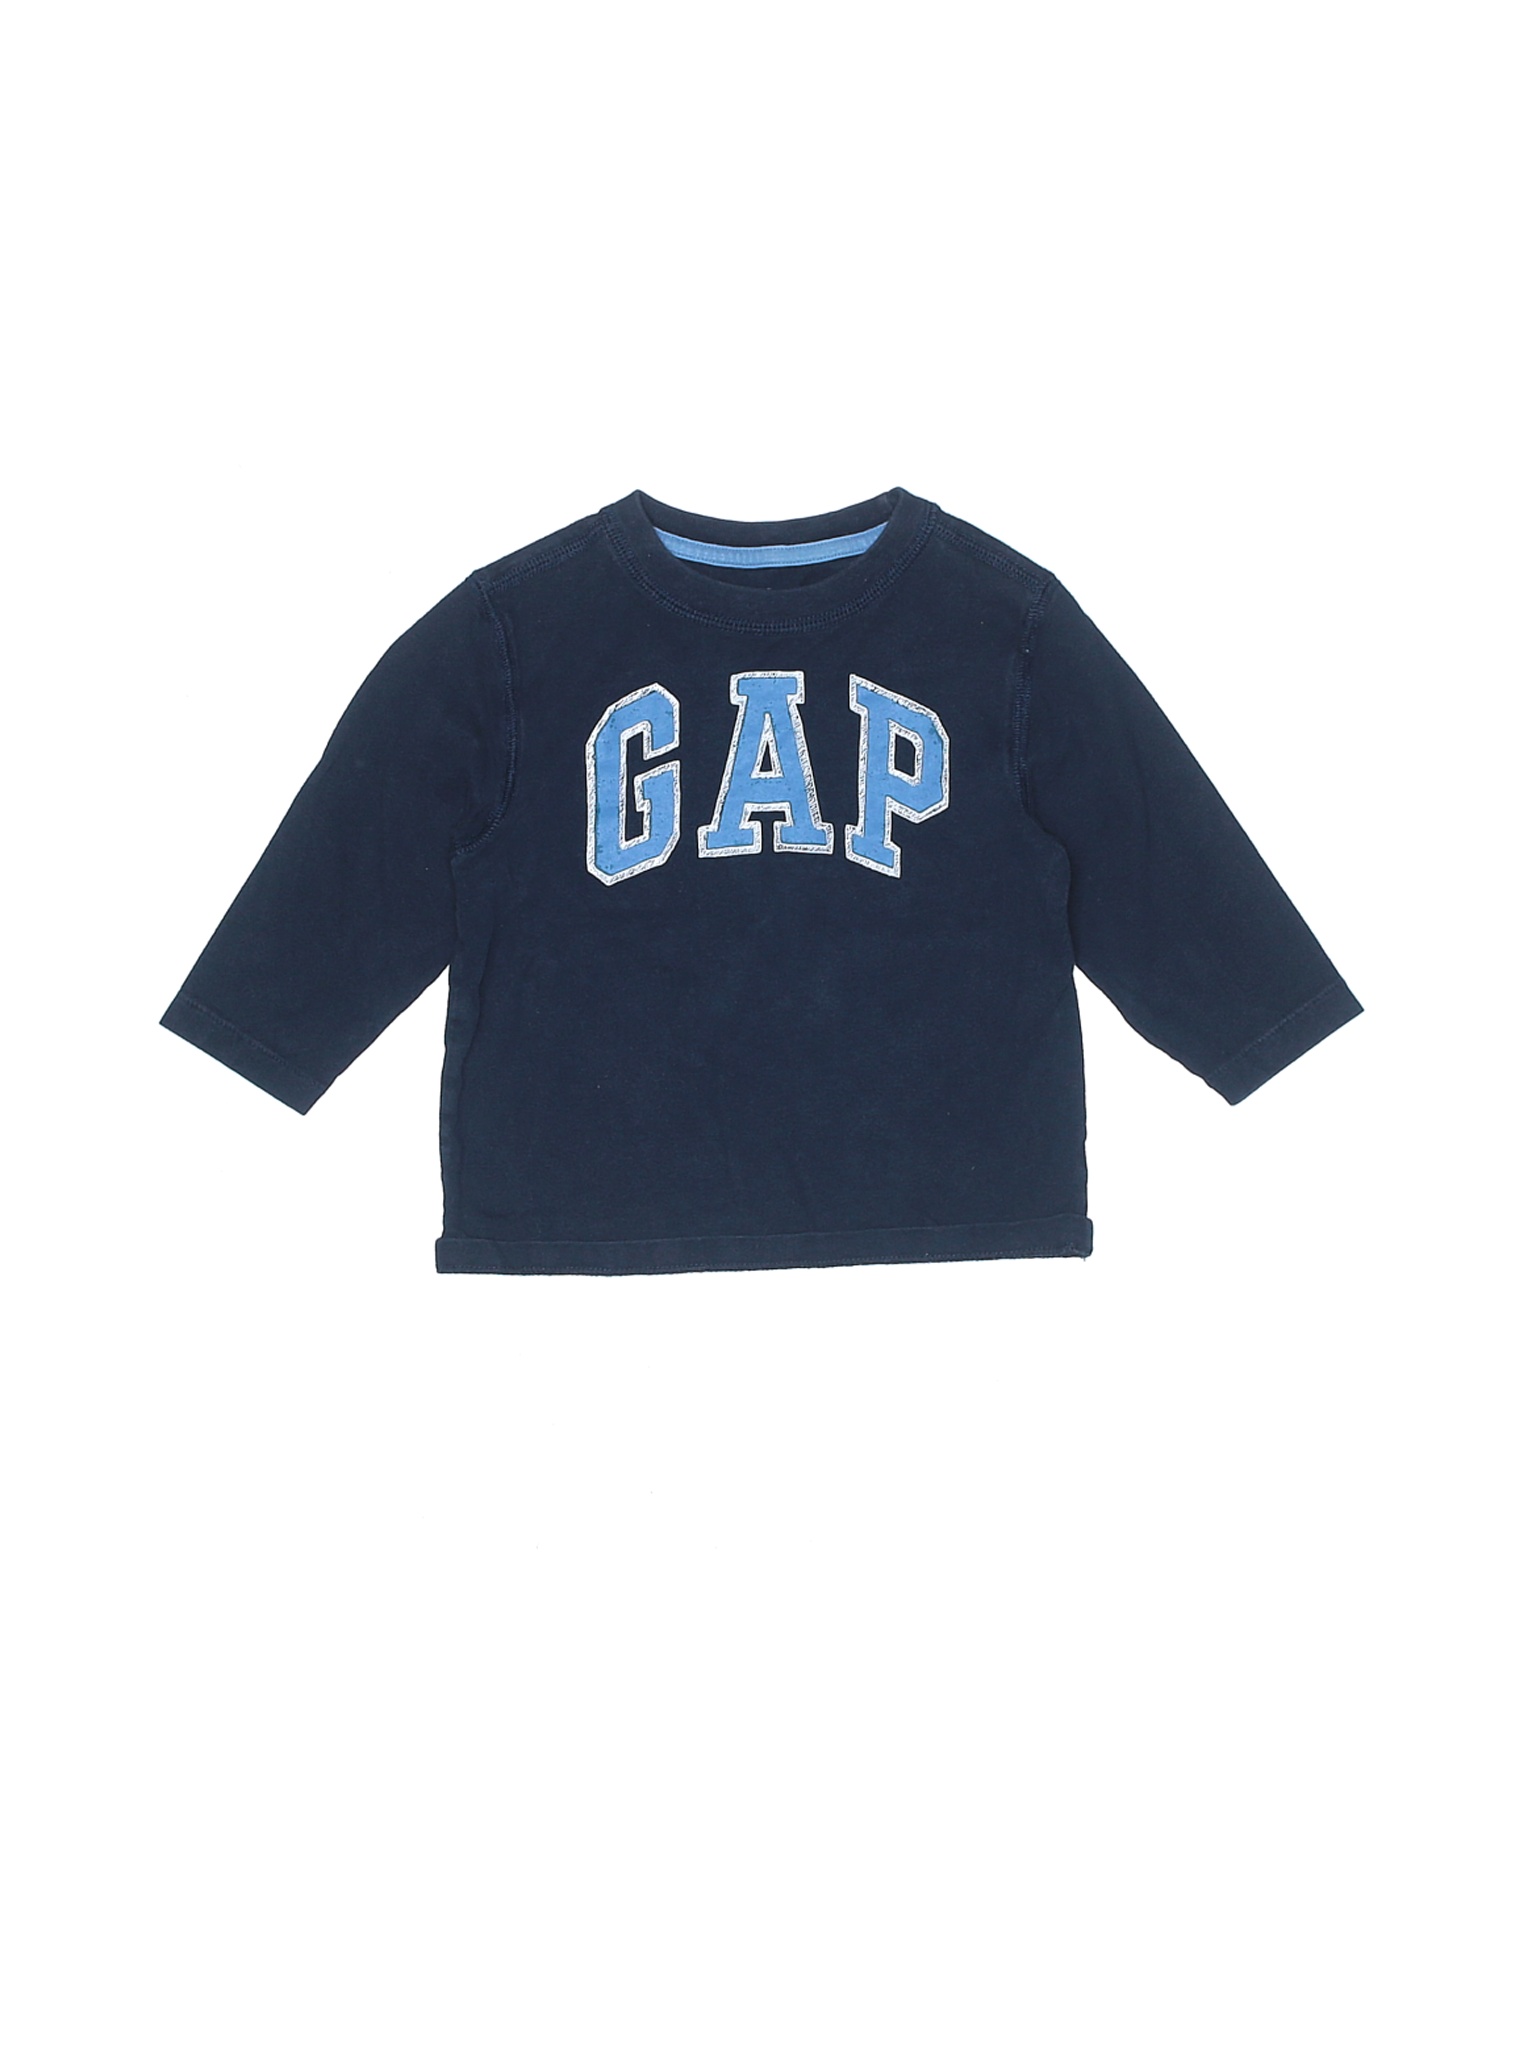 Baby Gap Girls Blue Long Sleeve T-Shirt 18-24 Months | eBay